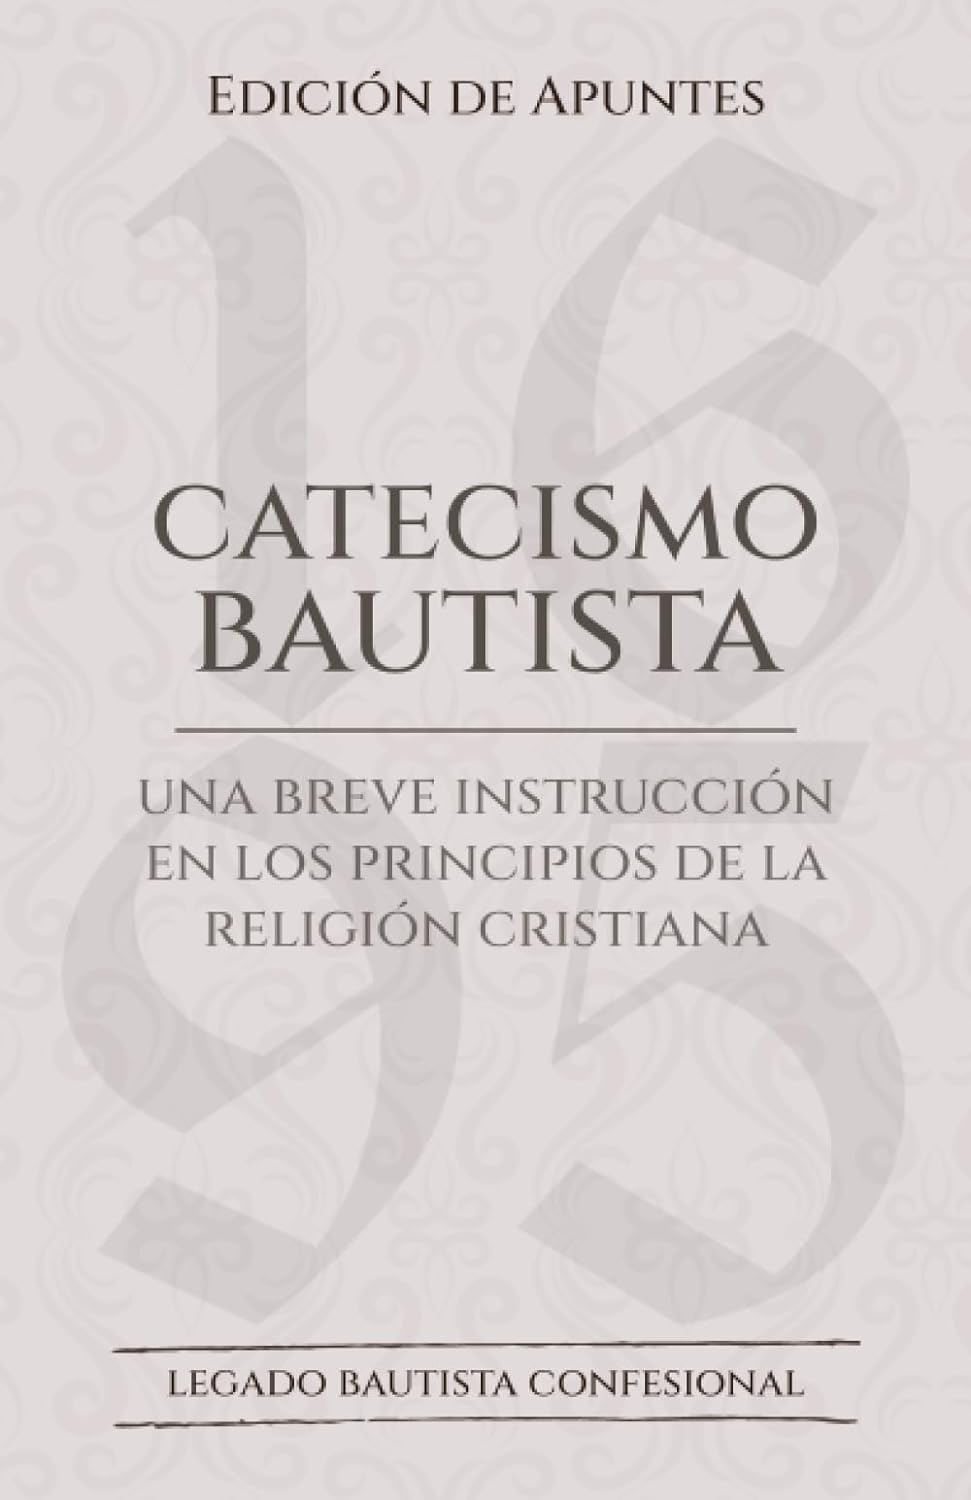 El catecismo bautista - Edición de apuntes